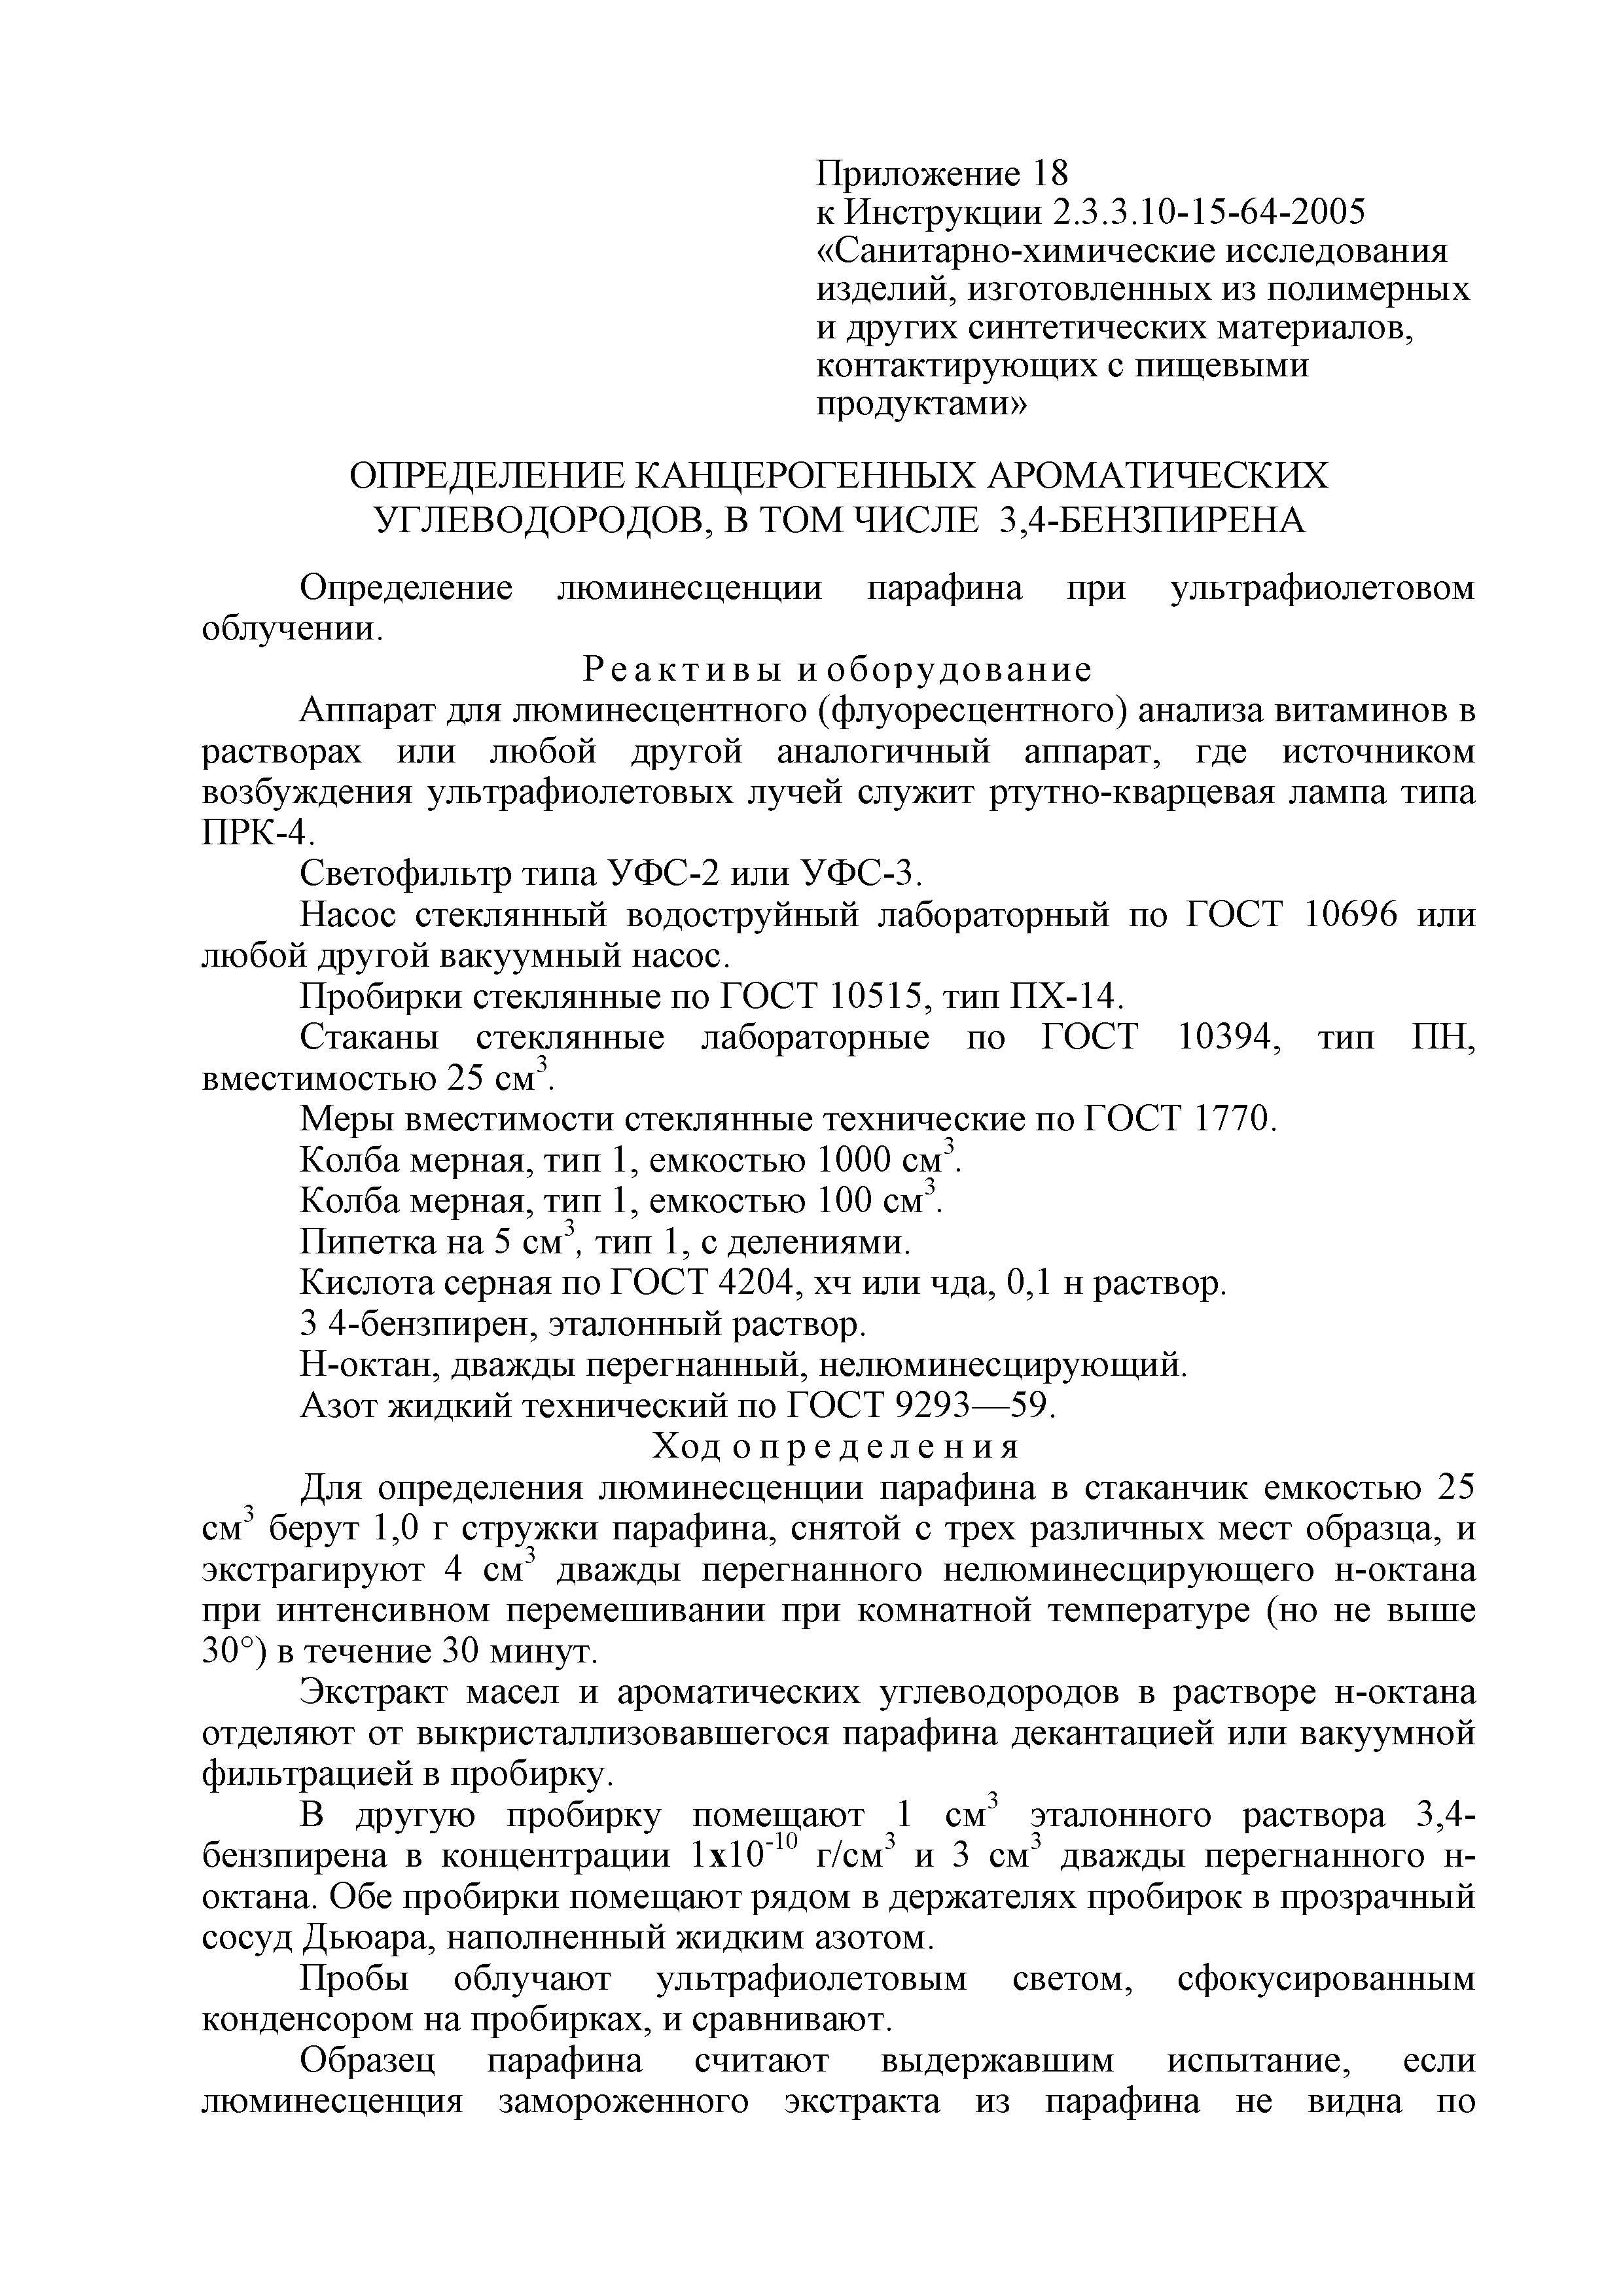 Инструкция 2.3.3.10-15-64-2005